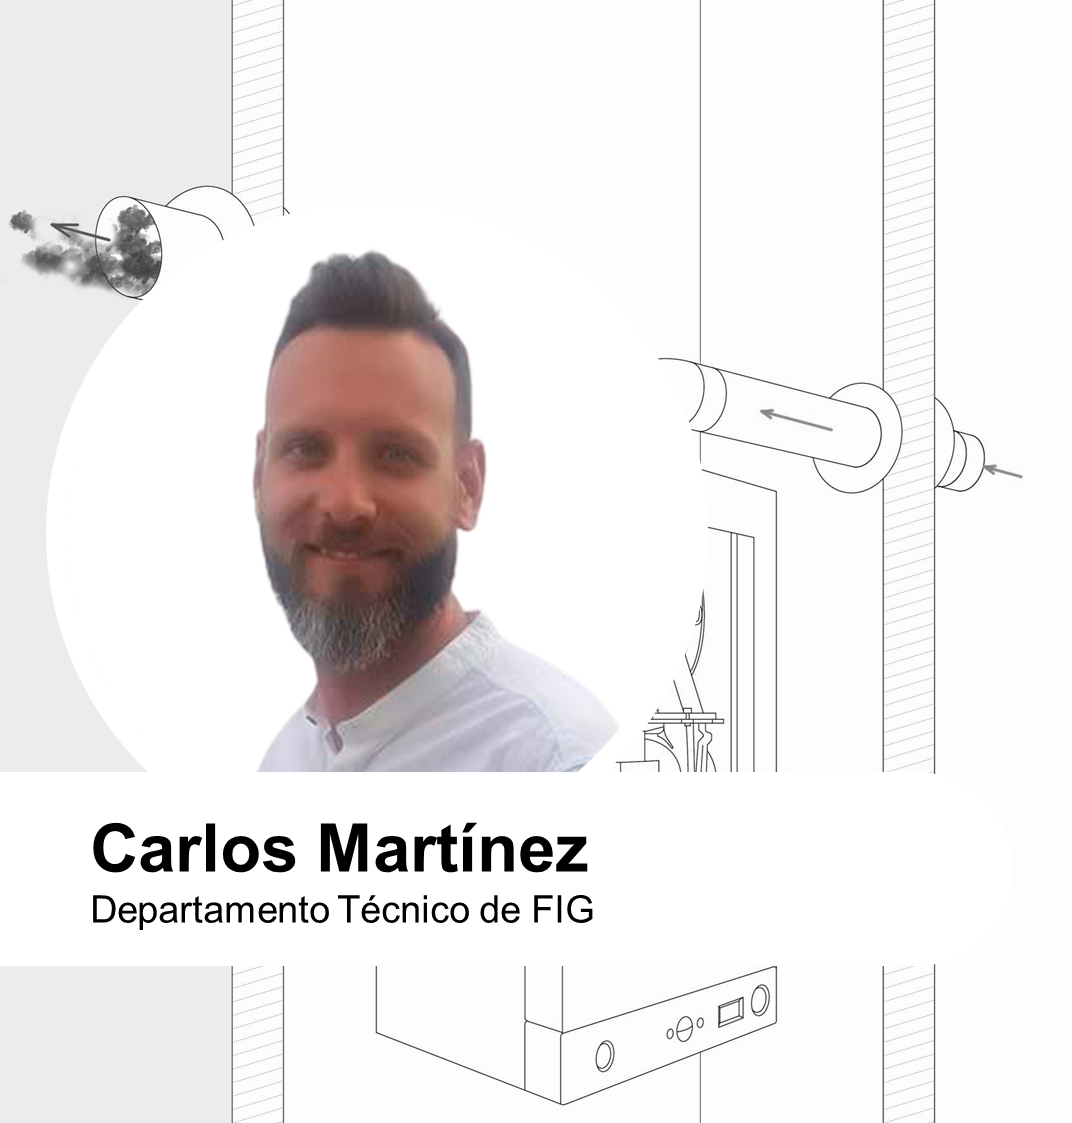 Chimeneas dimensionadas para funcionar en presión positiva por Carlos Martínez